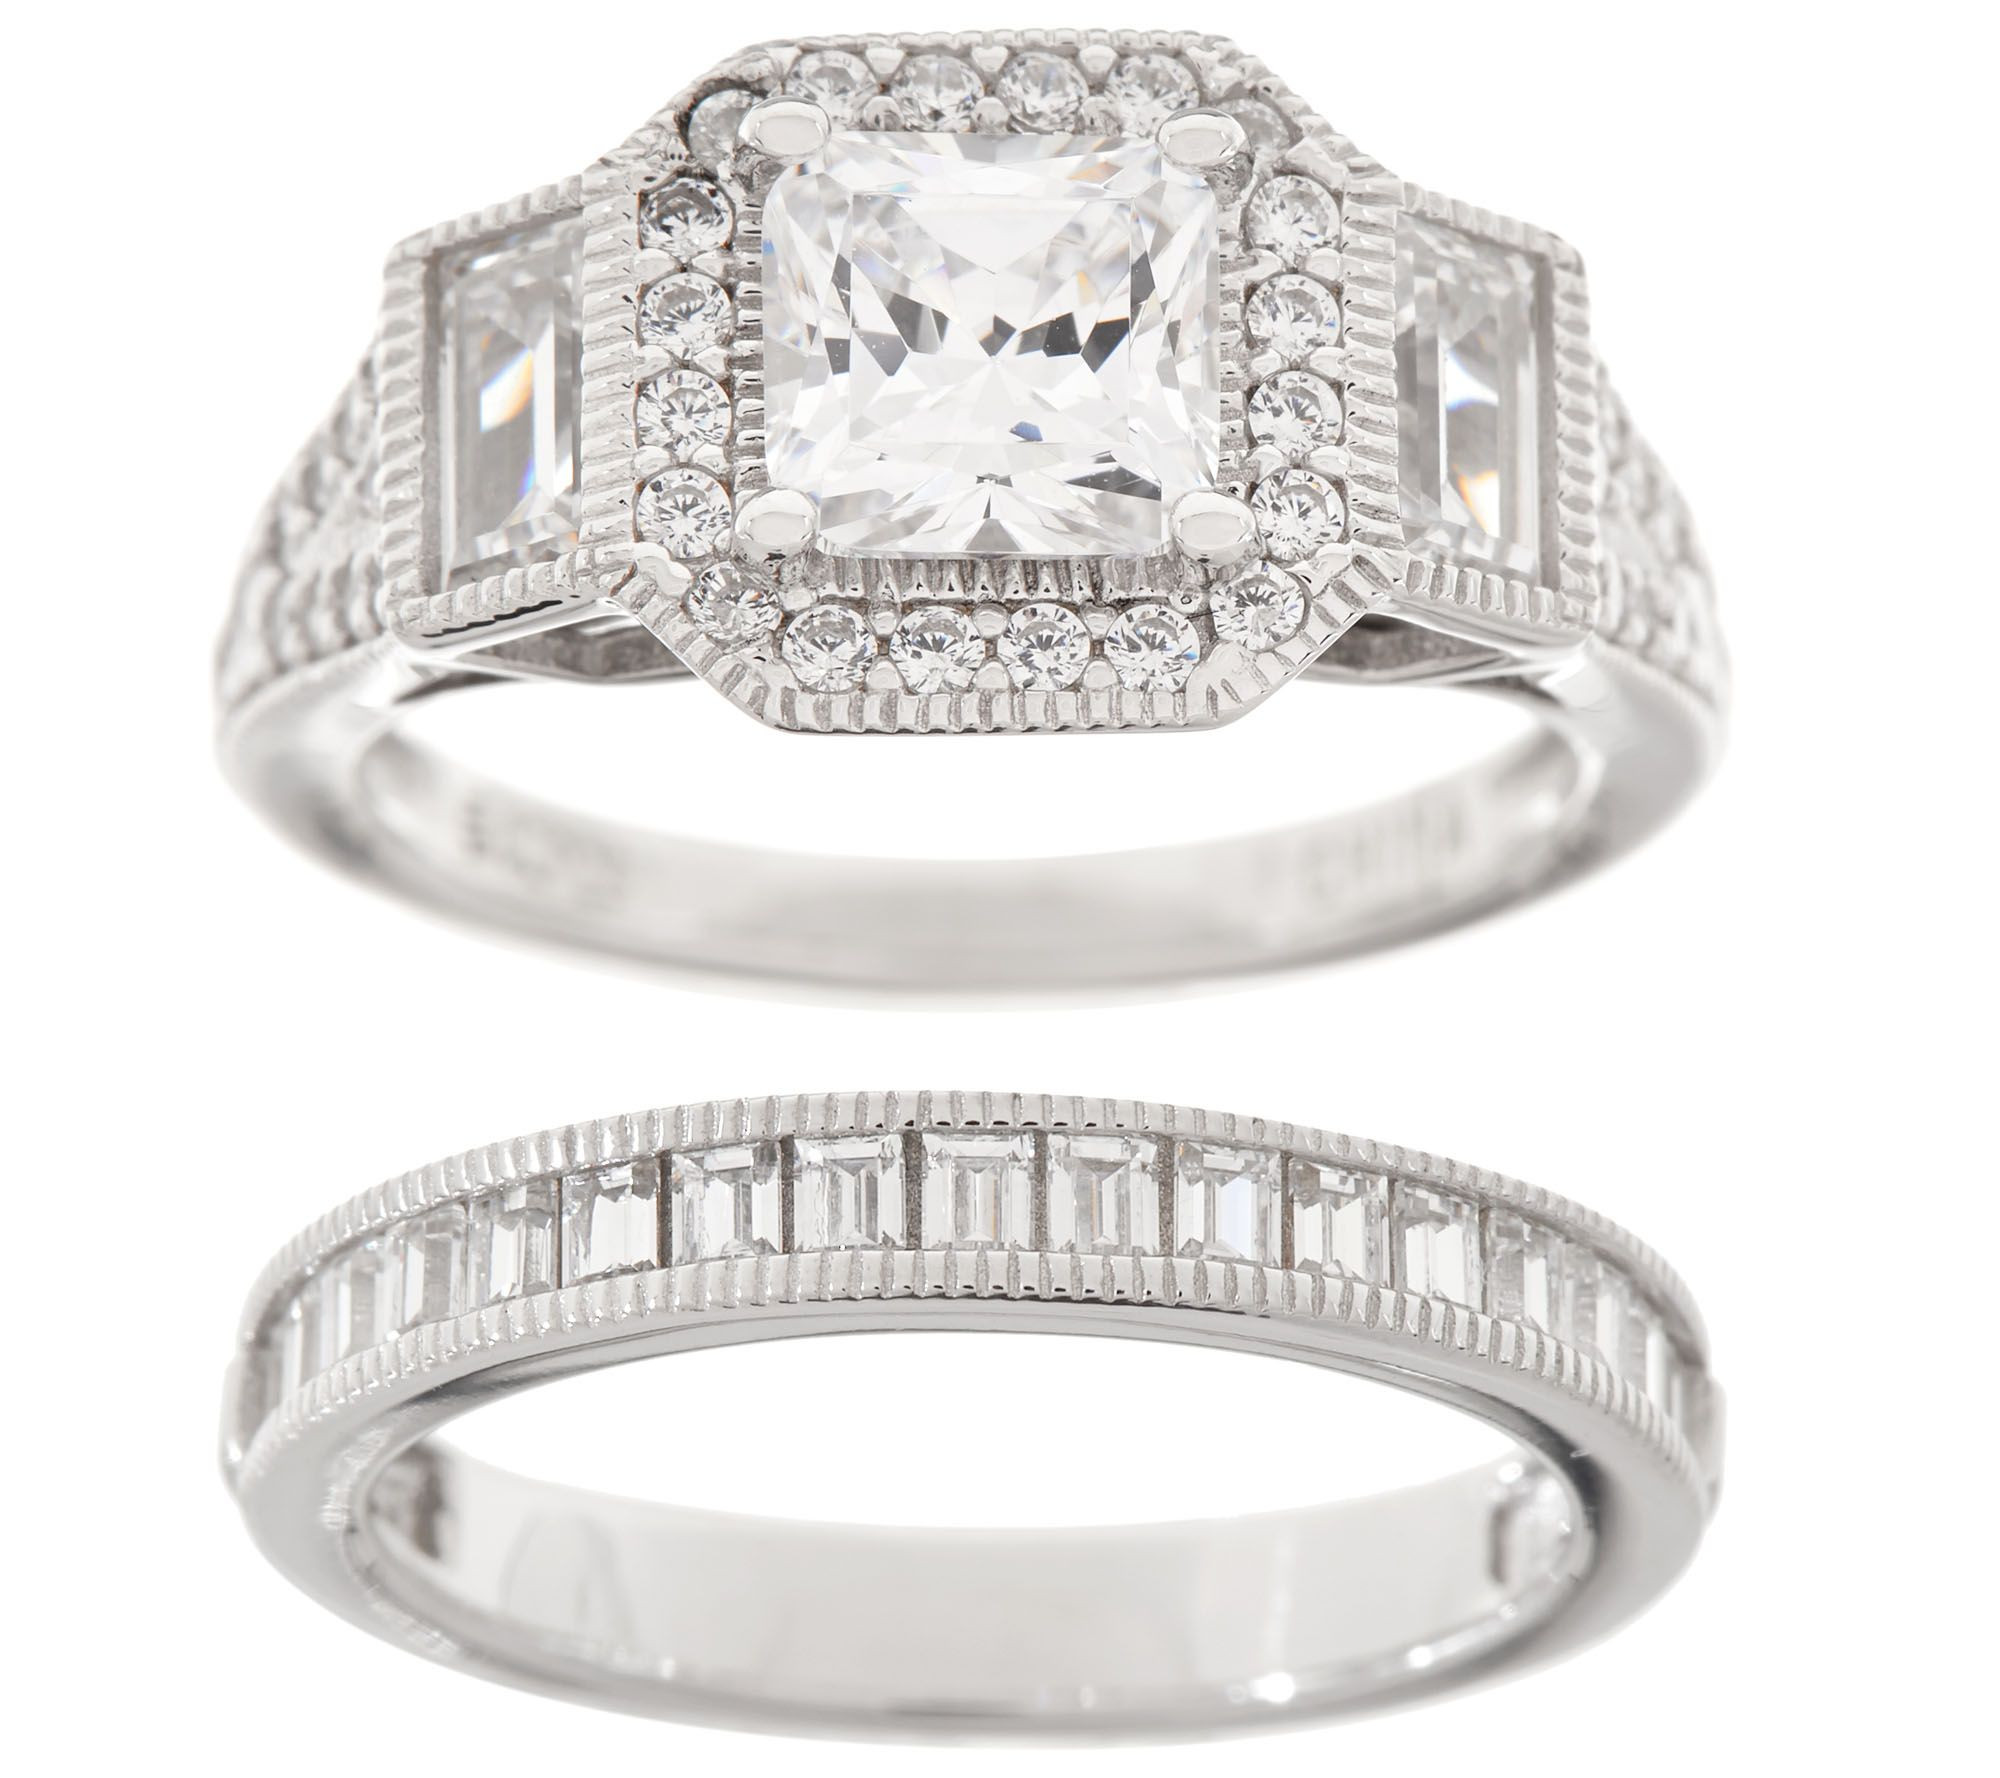 Qvc Wedding Rings Unique Qvc Wedding Ring Sets Wedding Decor Ideas Of Qvc Wedding Rings 1 